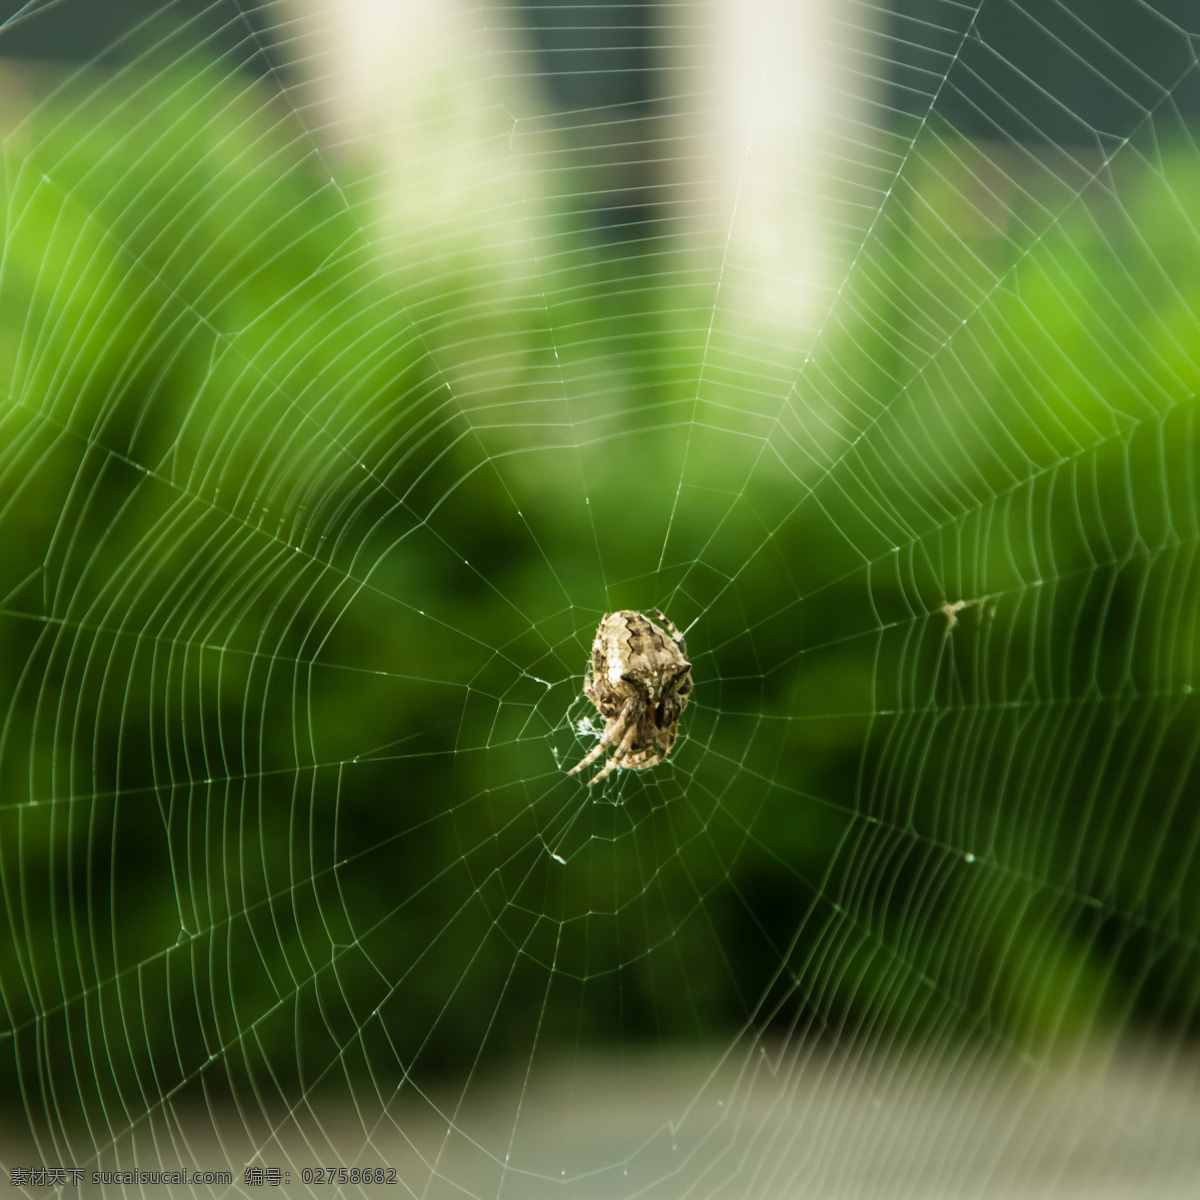 蜘蛛网 蜘蛛 昆虫 生物世界 绿色